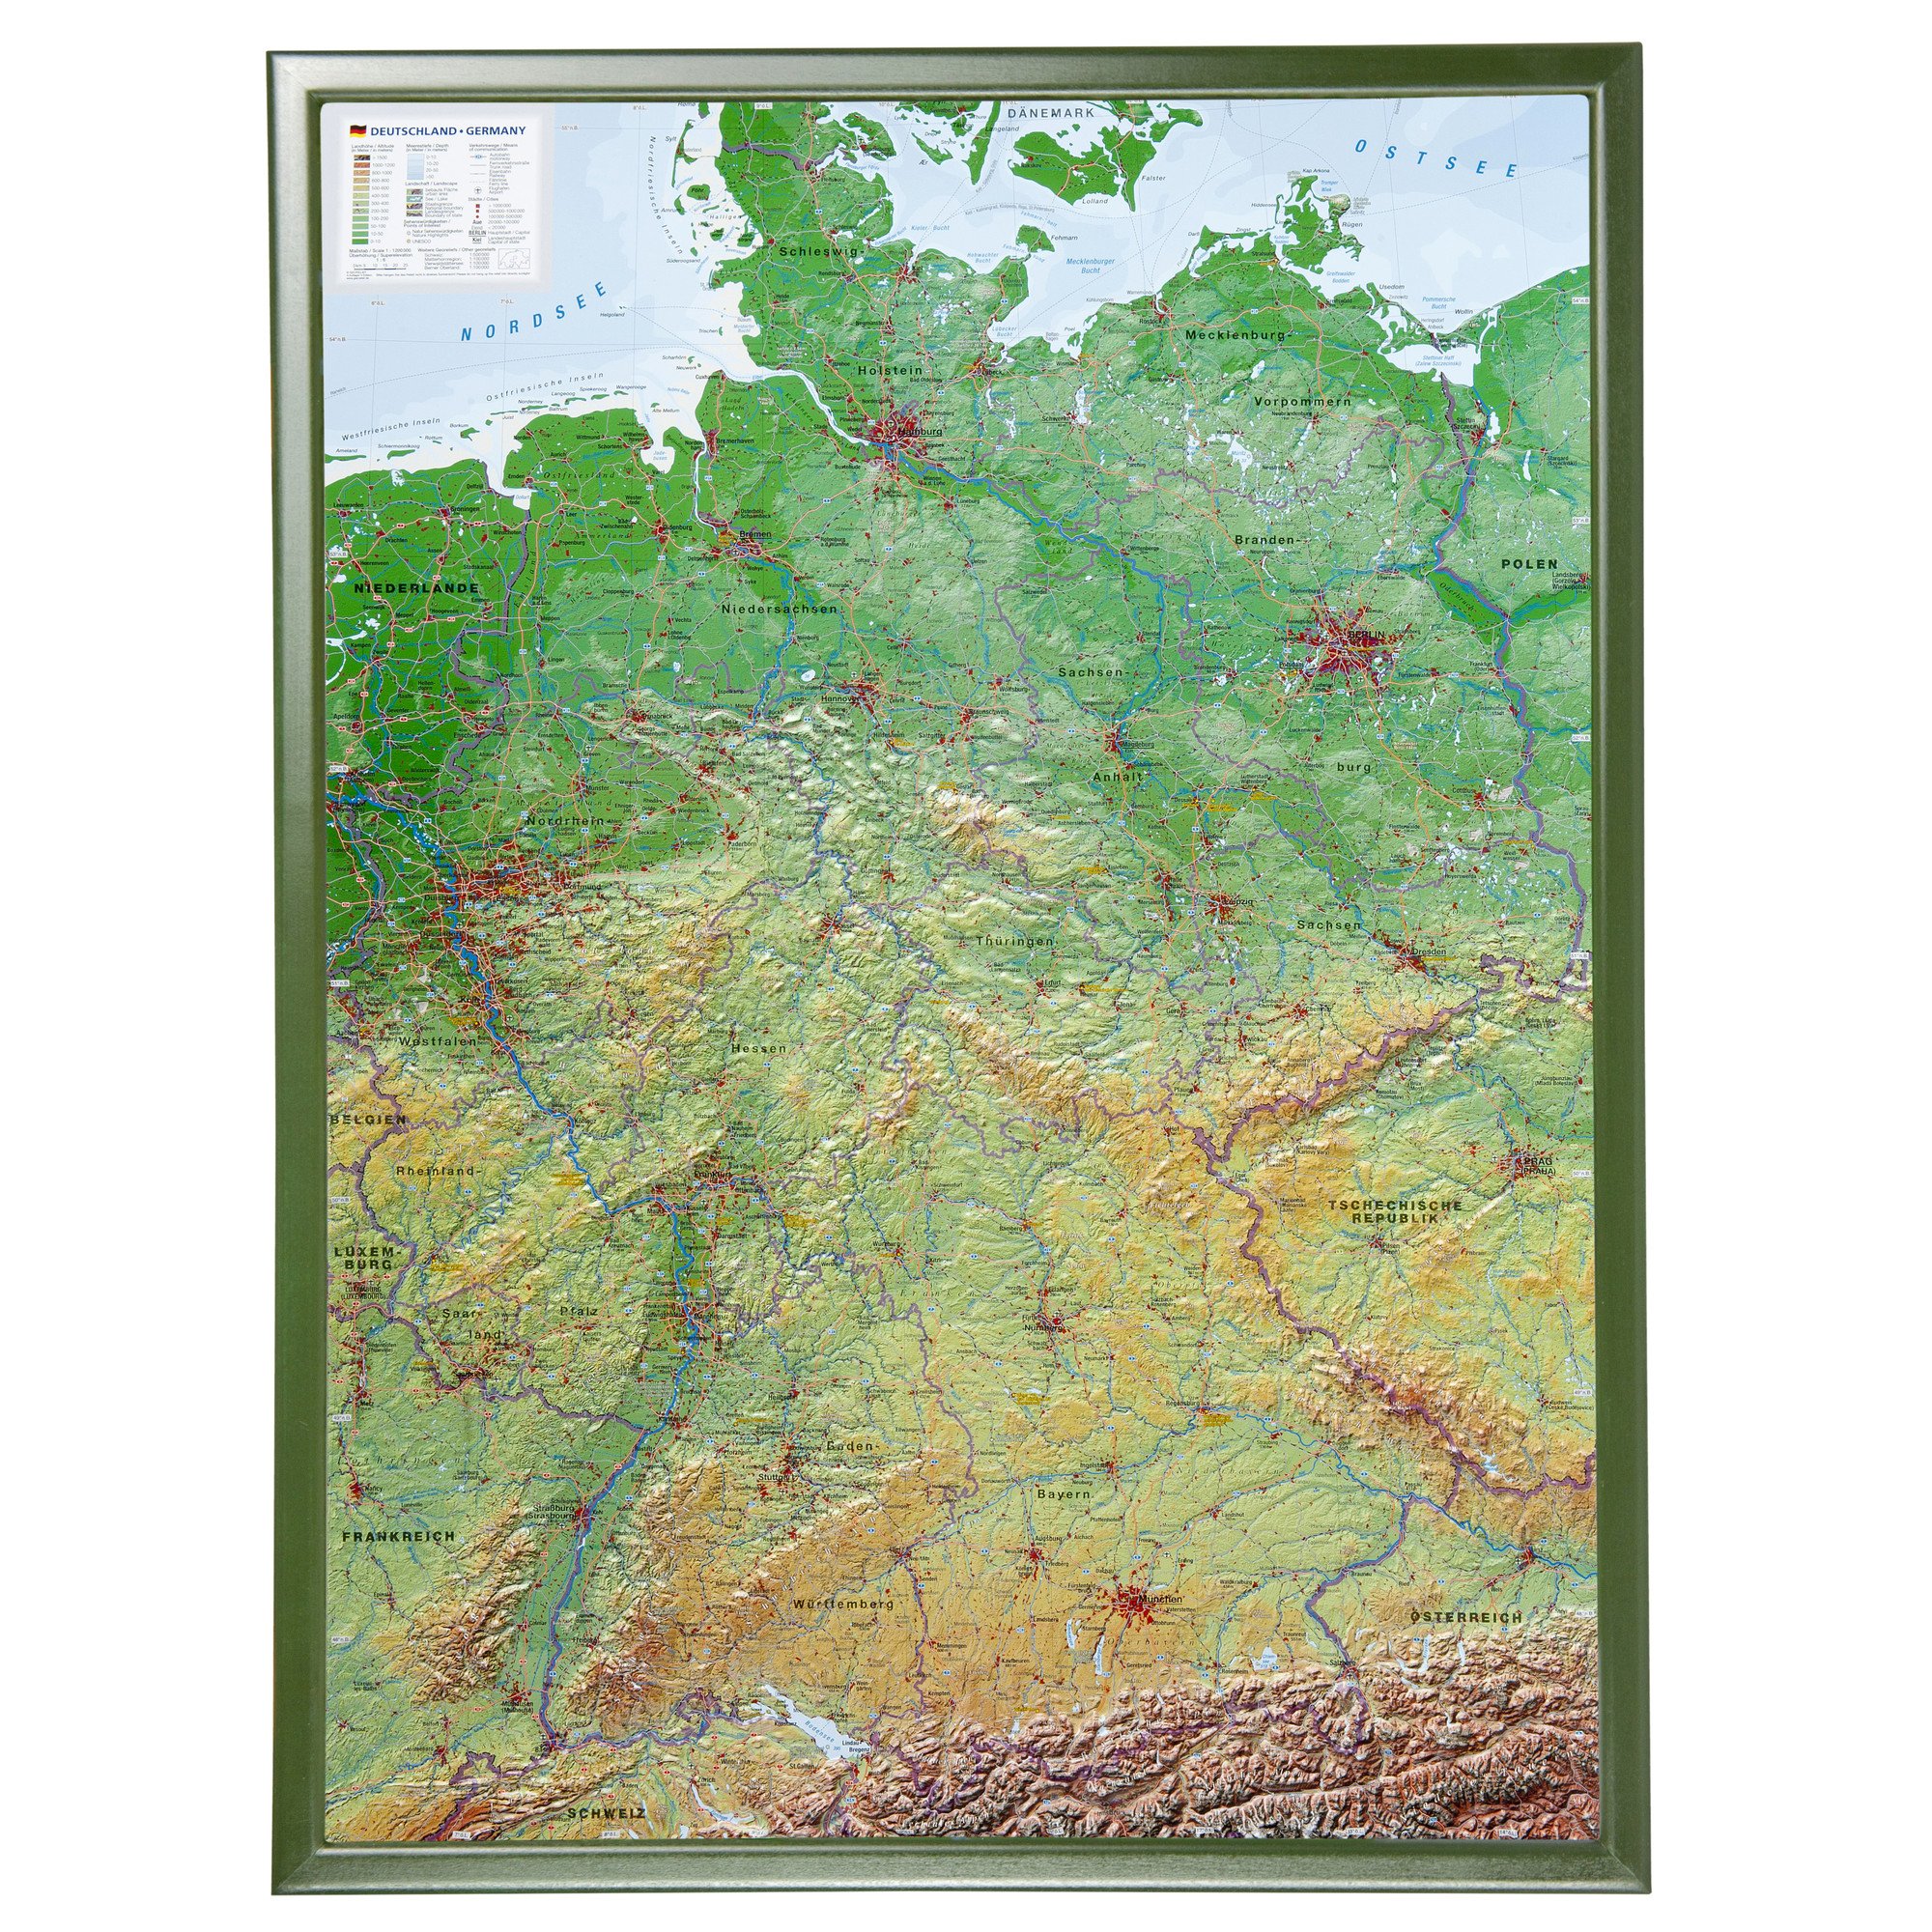 Deutschland mit Rahmen 1:1.2MIO: Reliefkarte von Deutschland mit grünfarbenen Holzrahmen